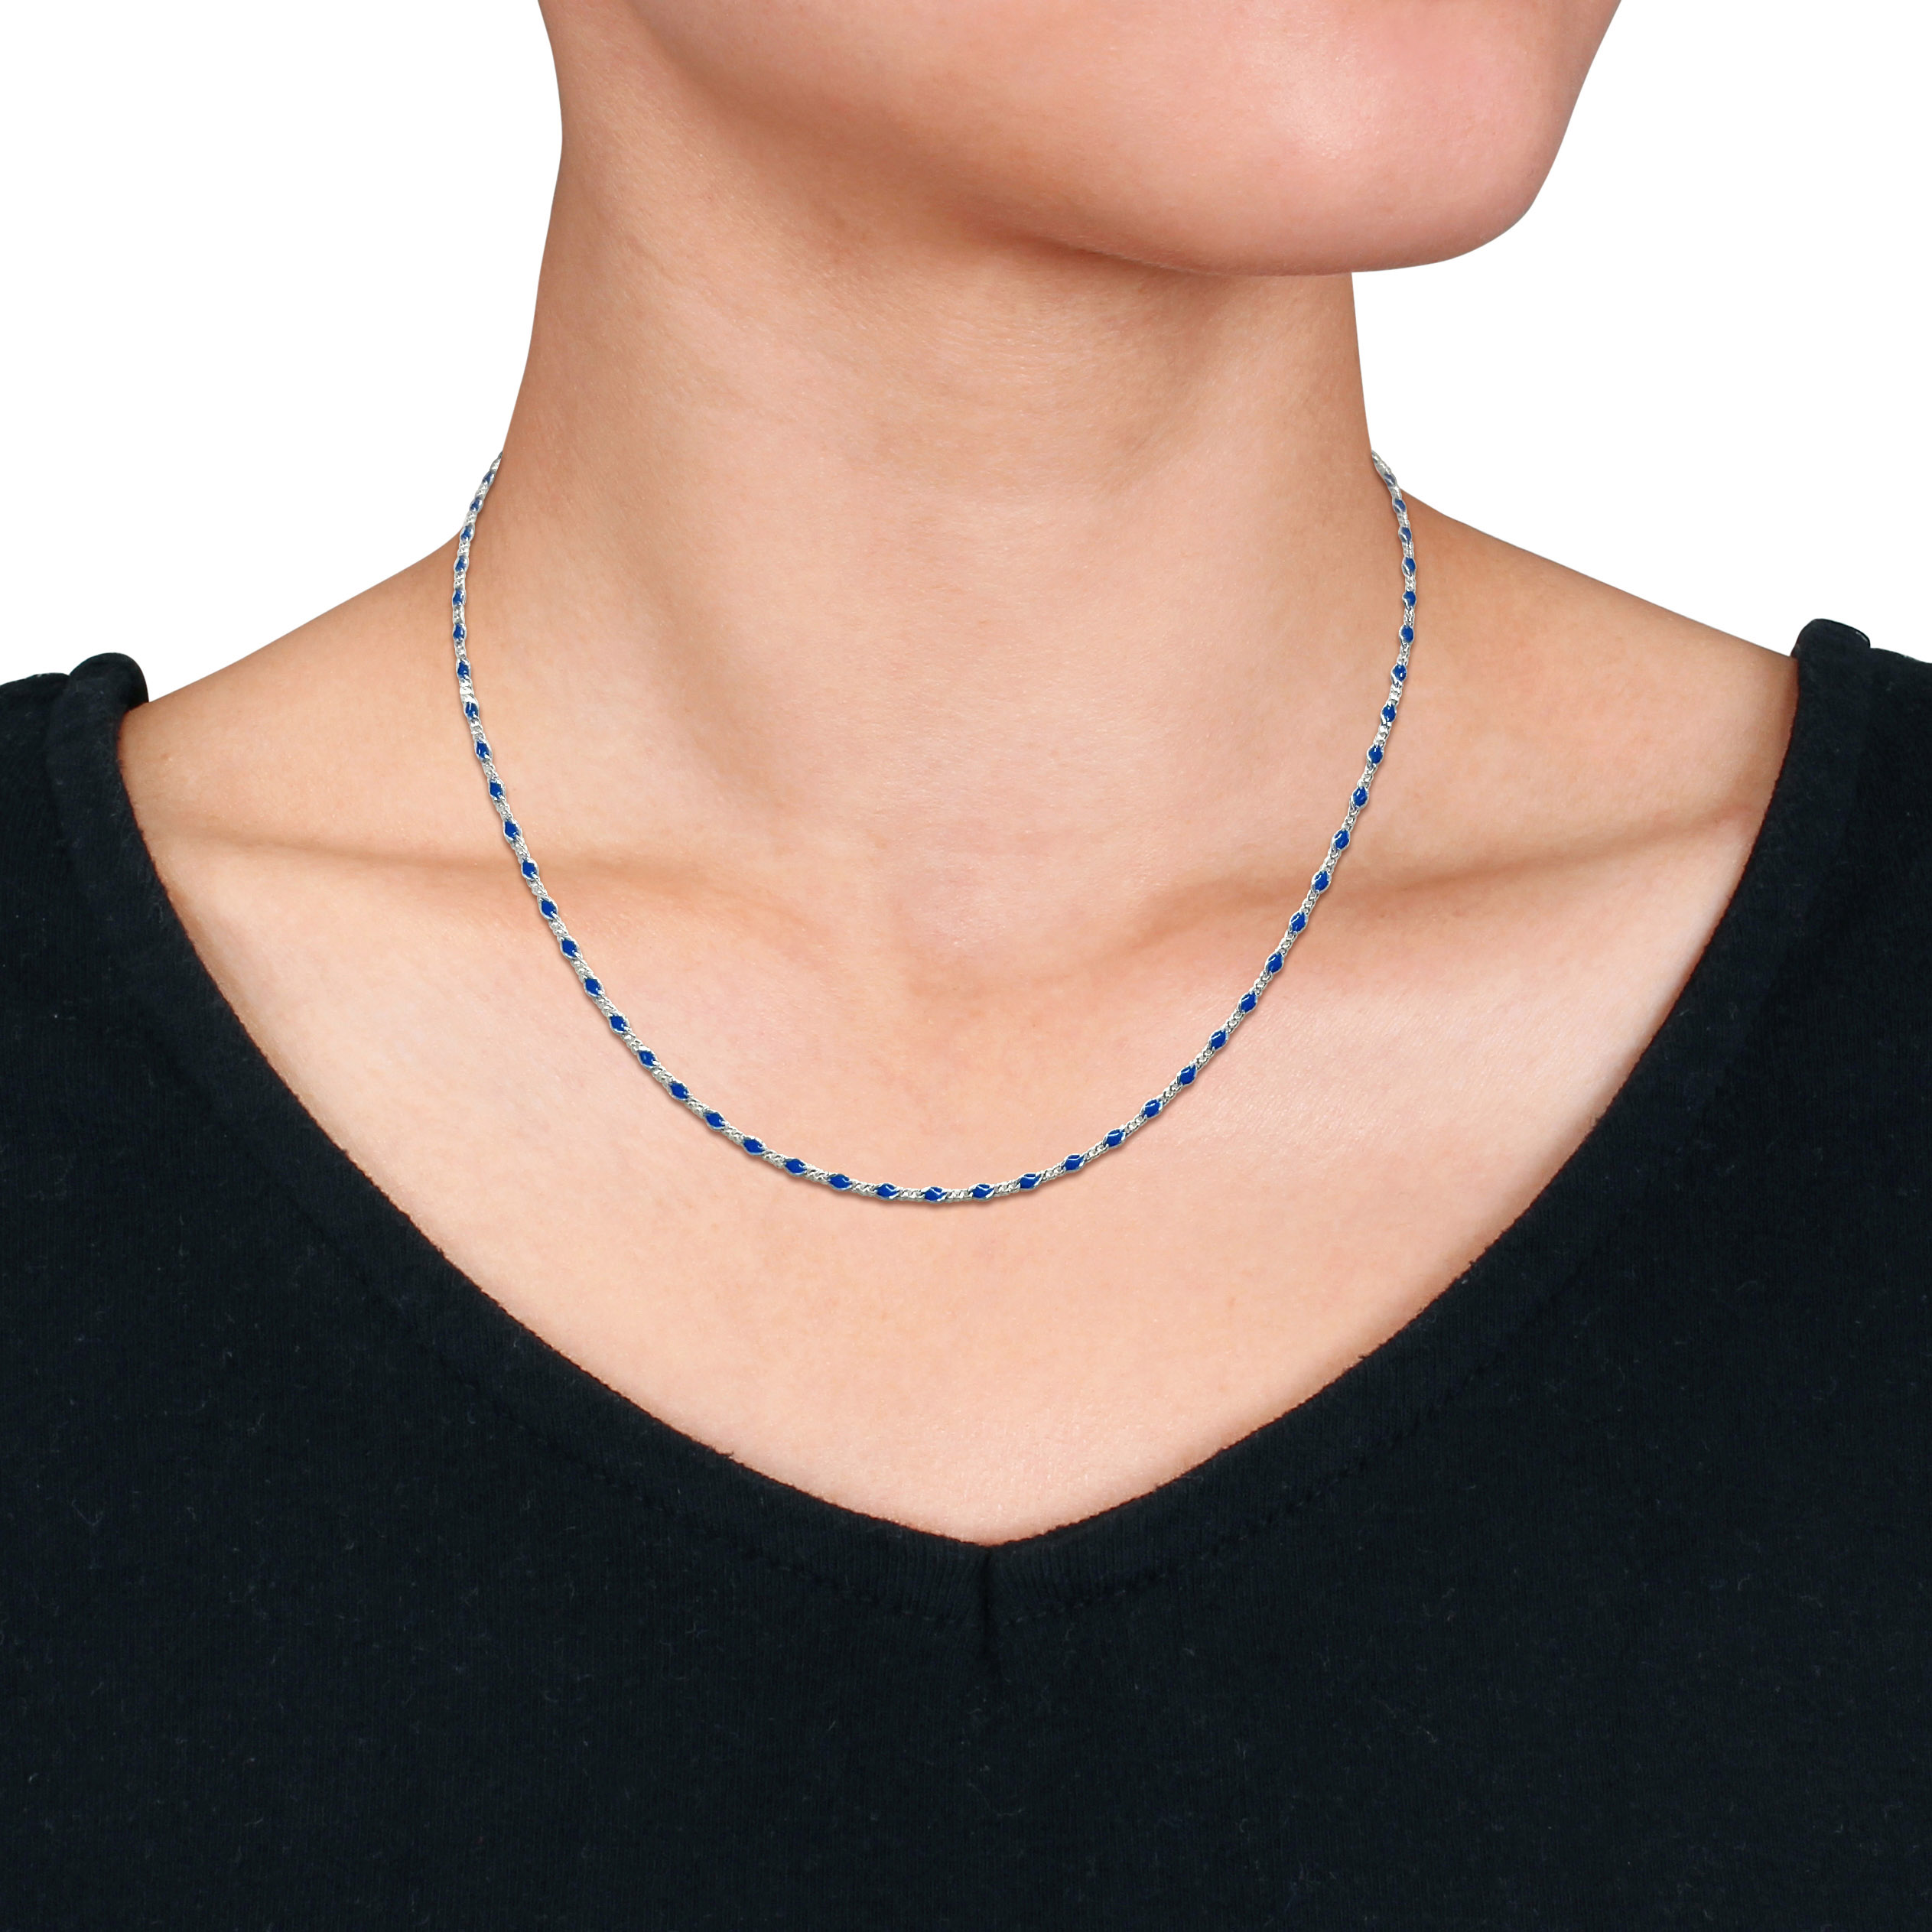 Blue Enamel Bead Necklace in Sterling Silver - 18 in.